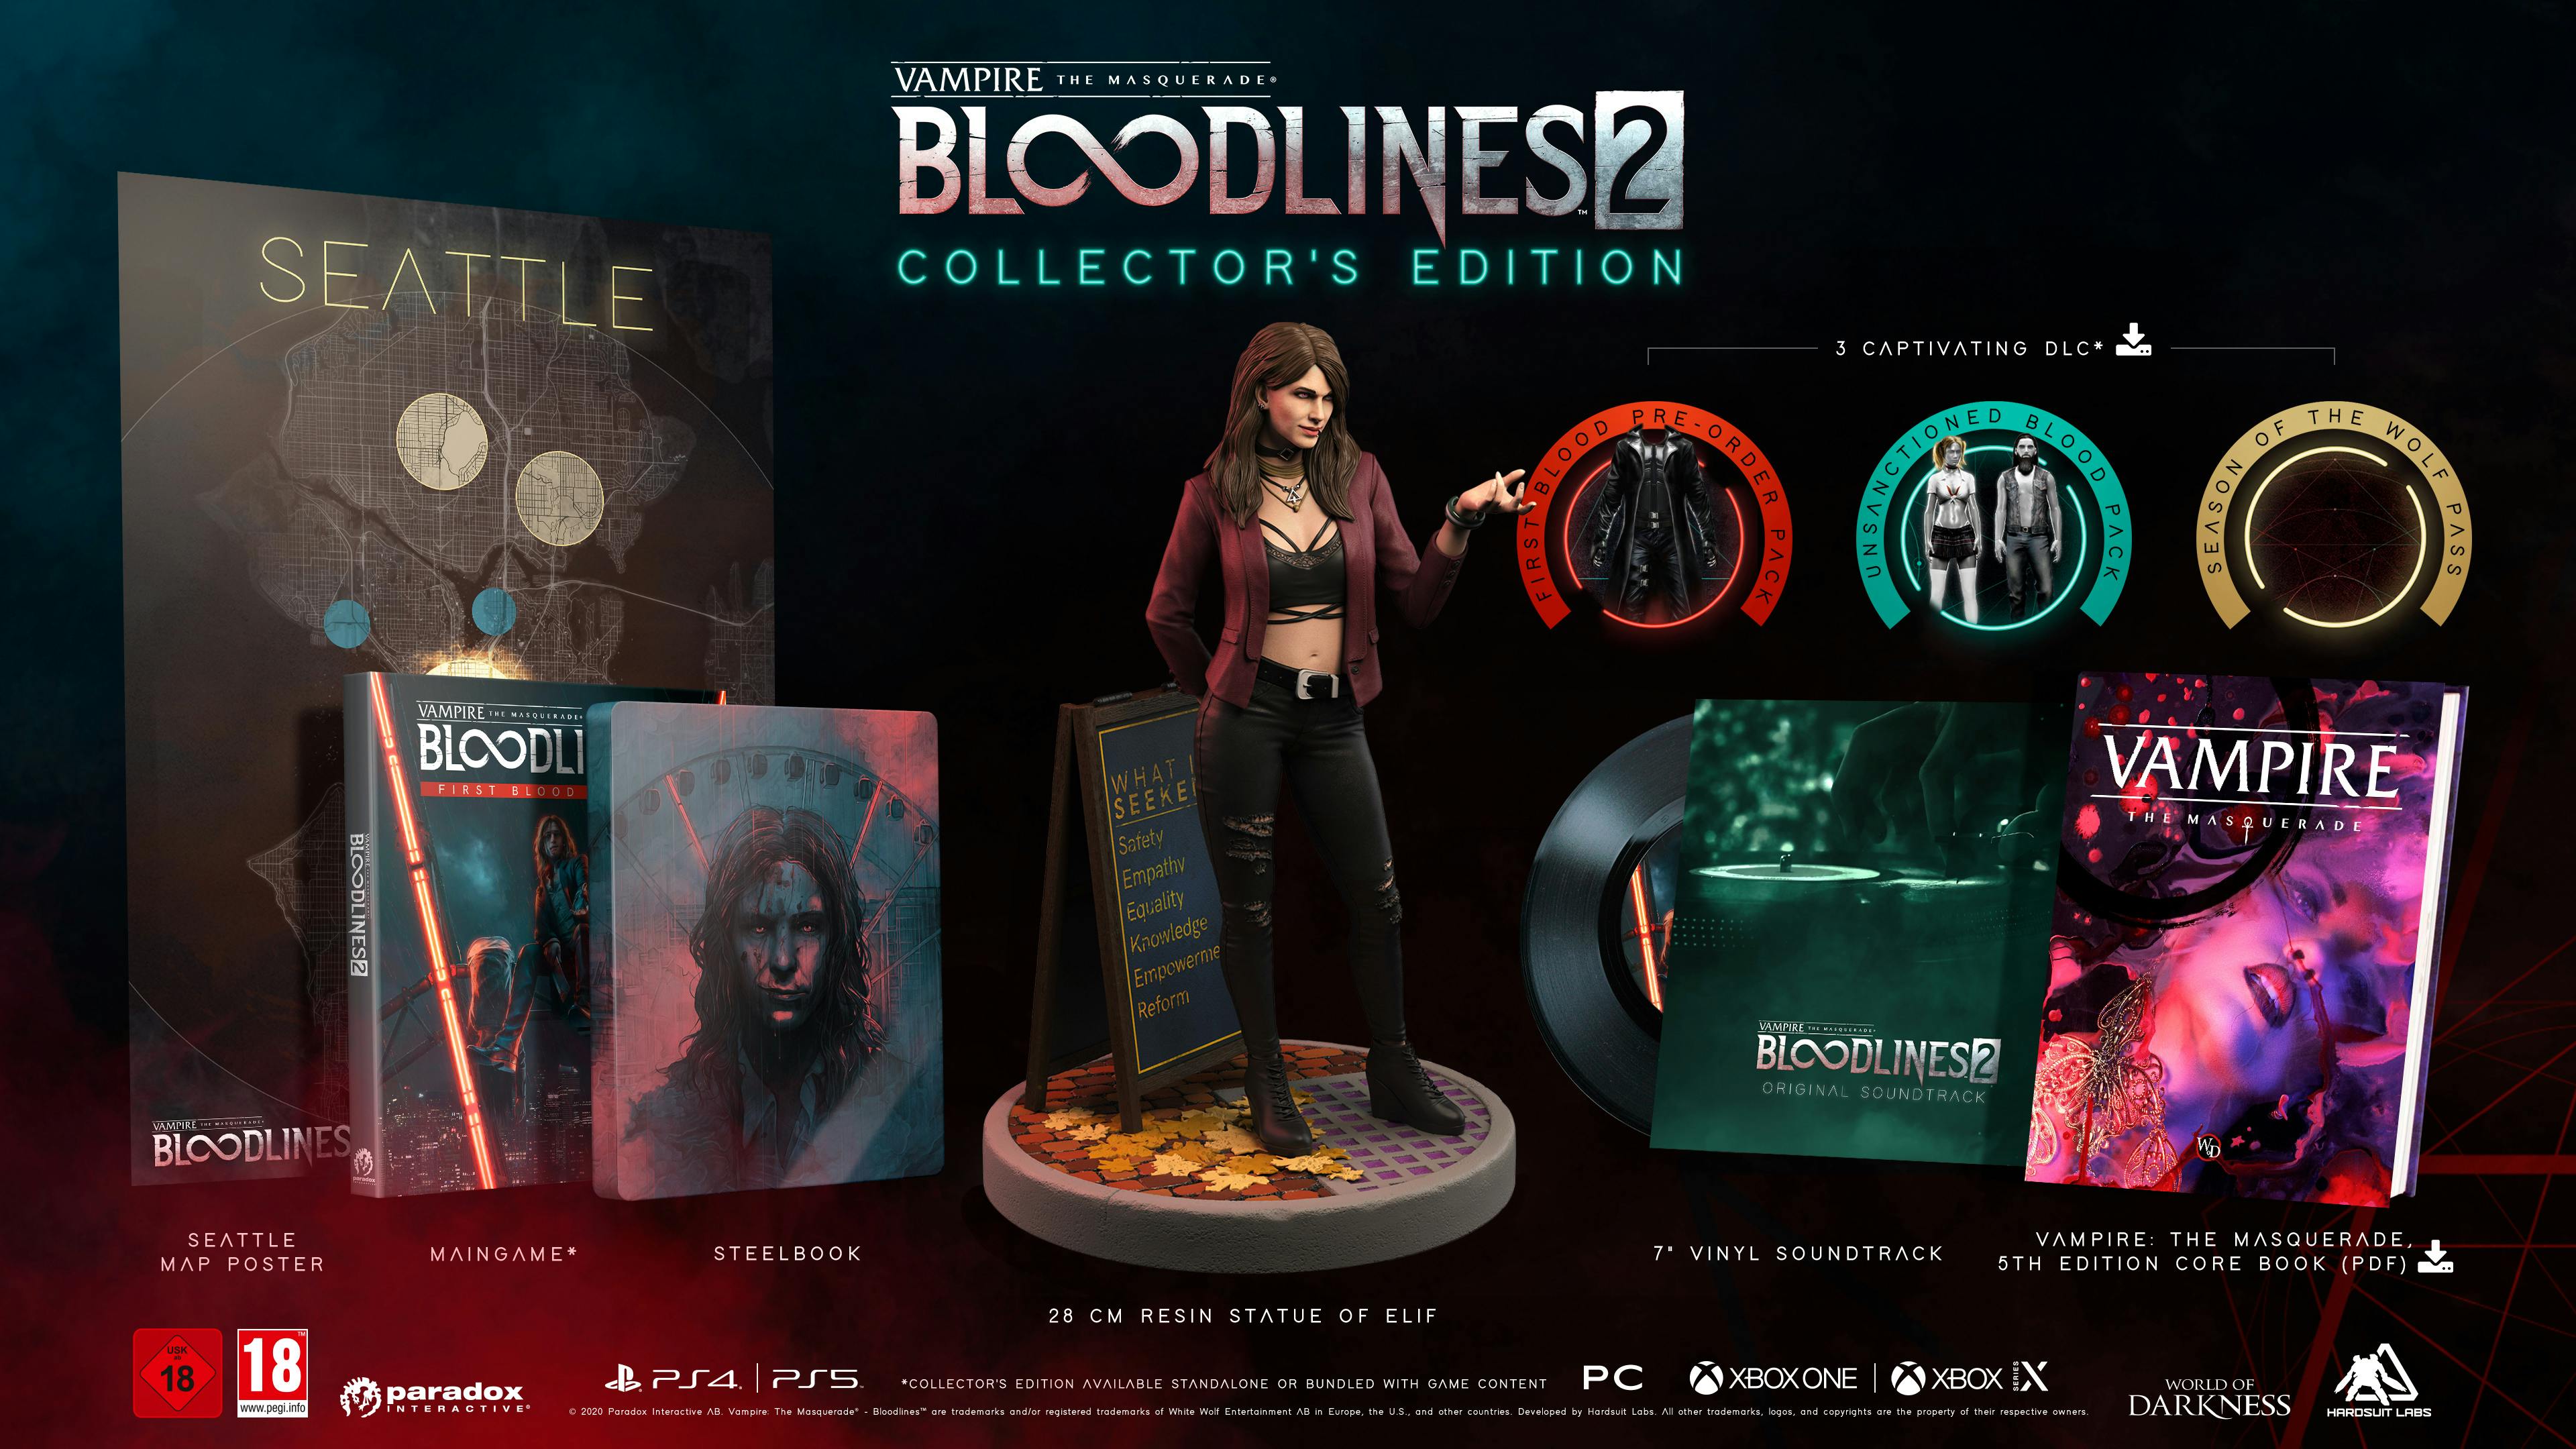 La edición de coleccionista de Vampire: the Masquerade - Bloodlines 2 incluía muchos coleccionables físicos, todos los cuales se reembolsarán a los propietarios actuales.